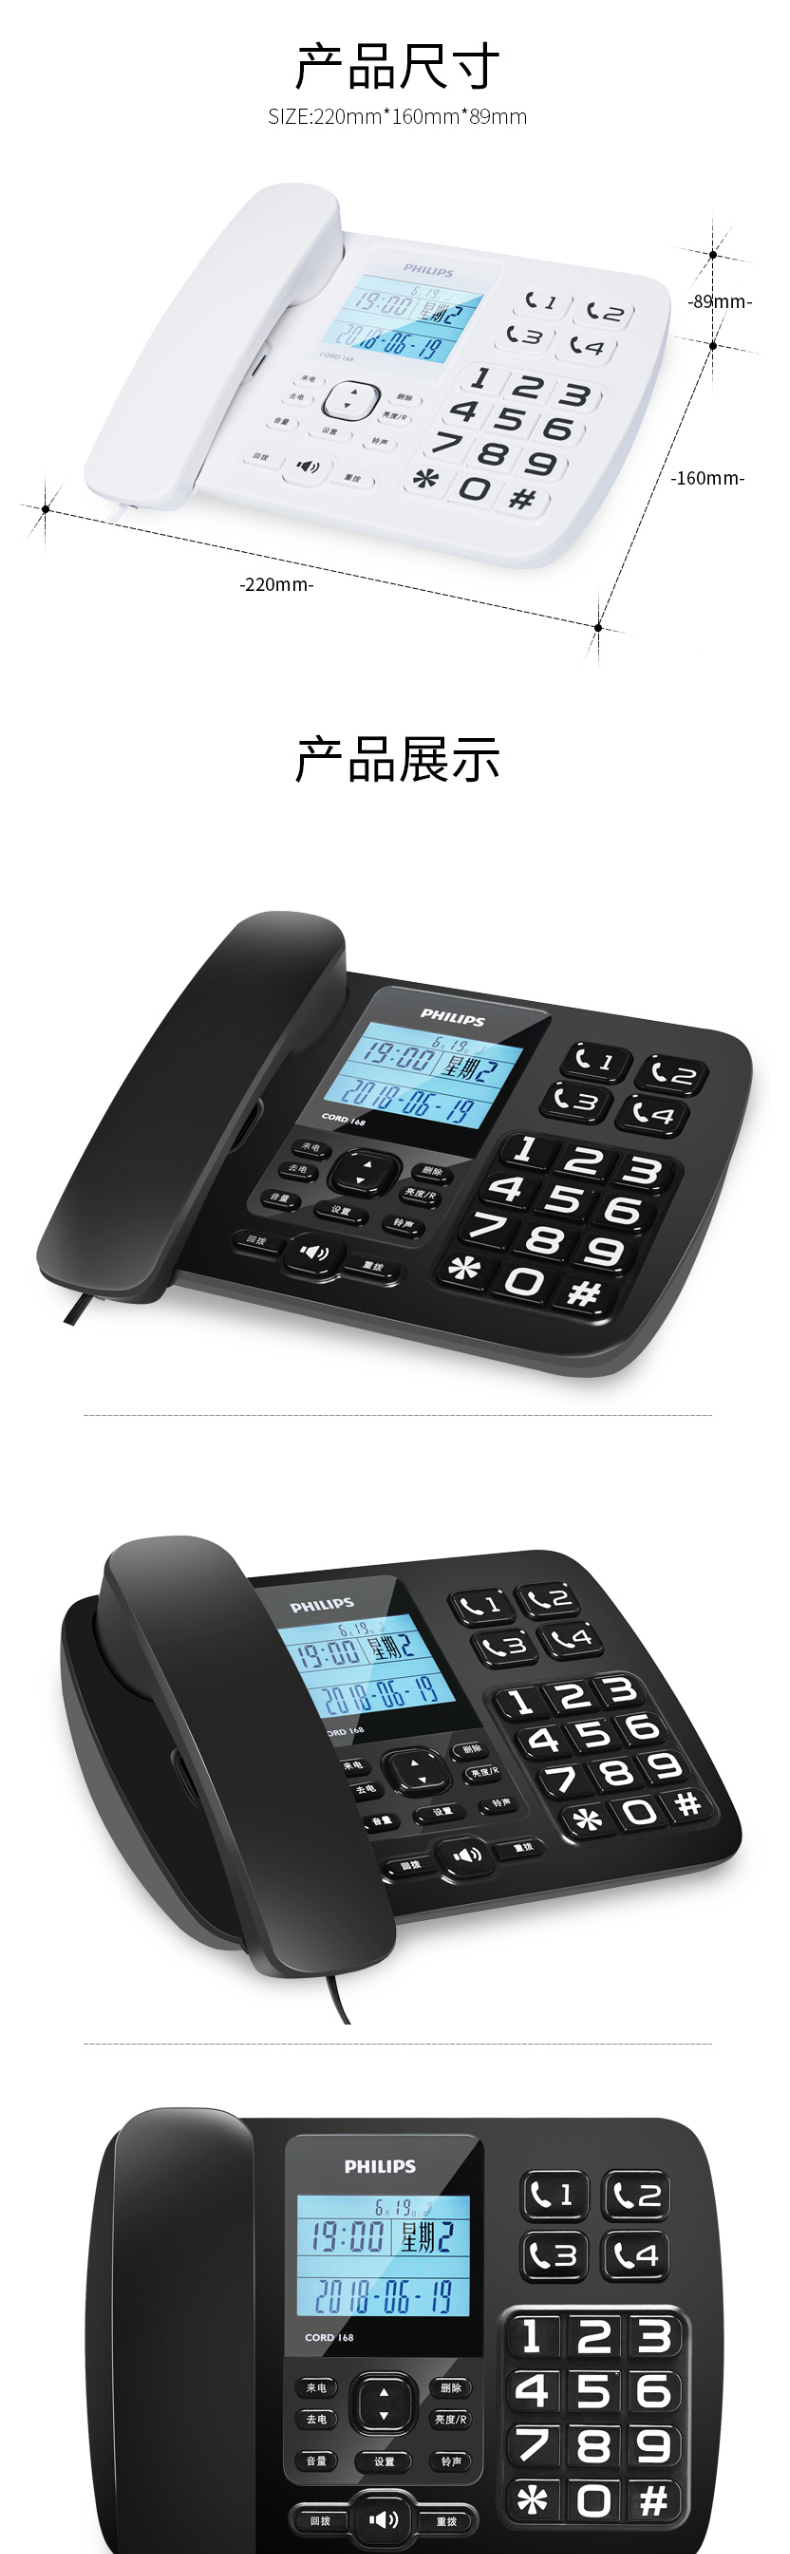 飞利浦 PHILIPS 有线座机电话机 CORD168 (黑色)